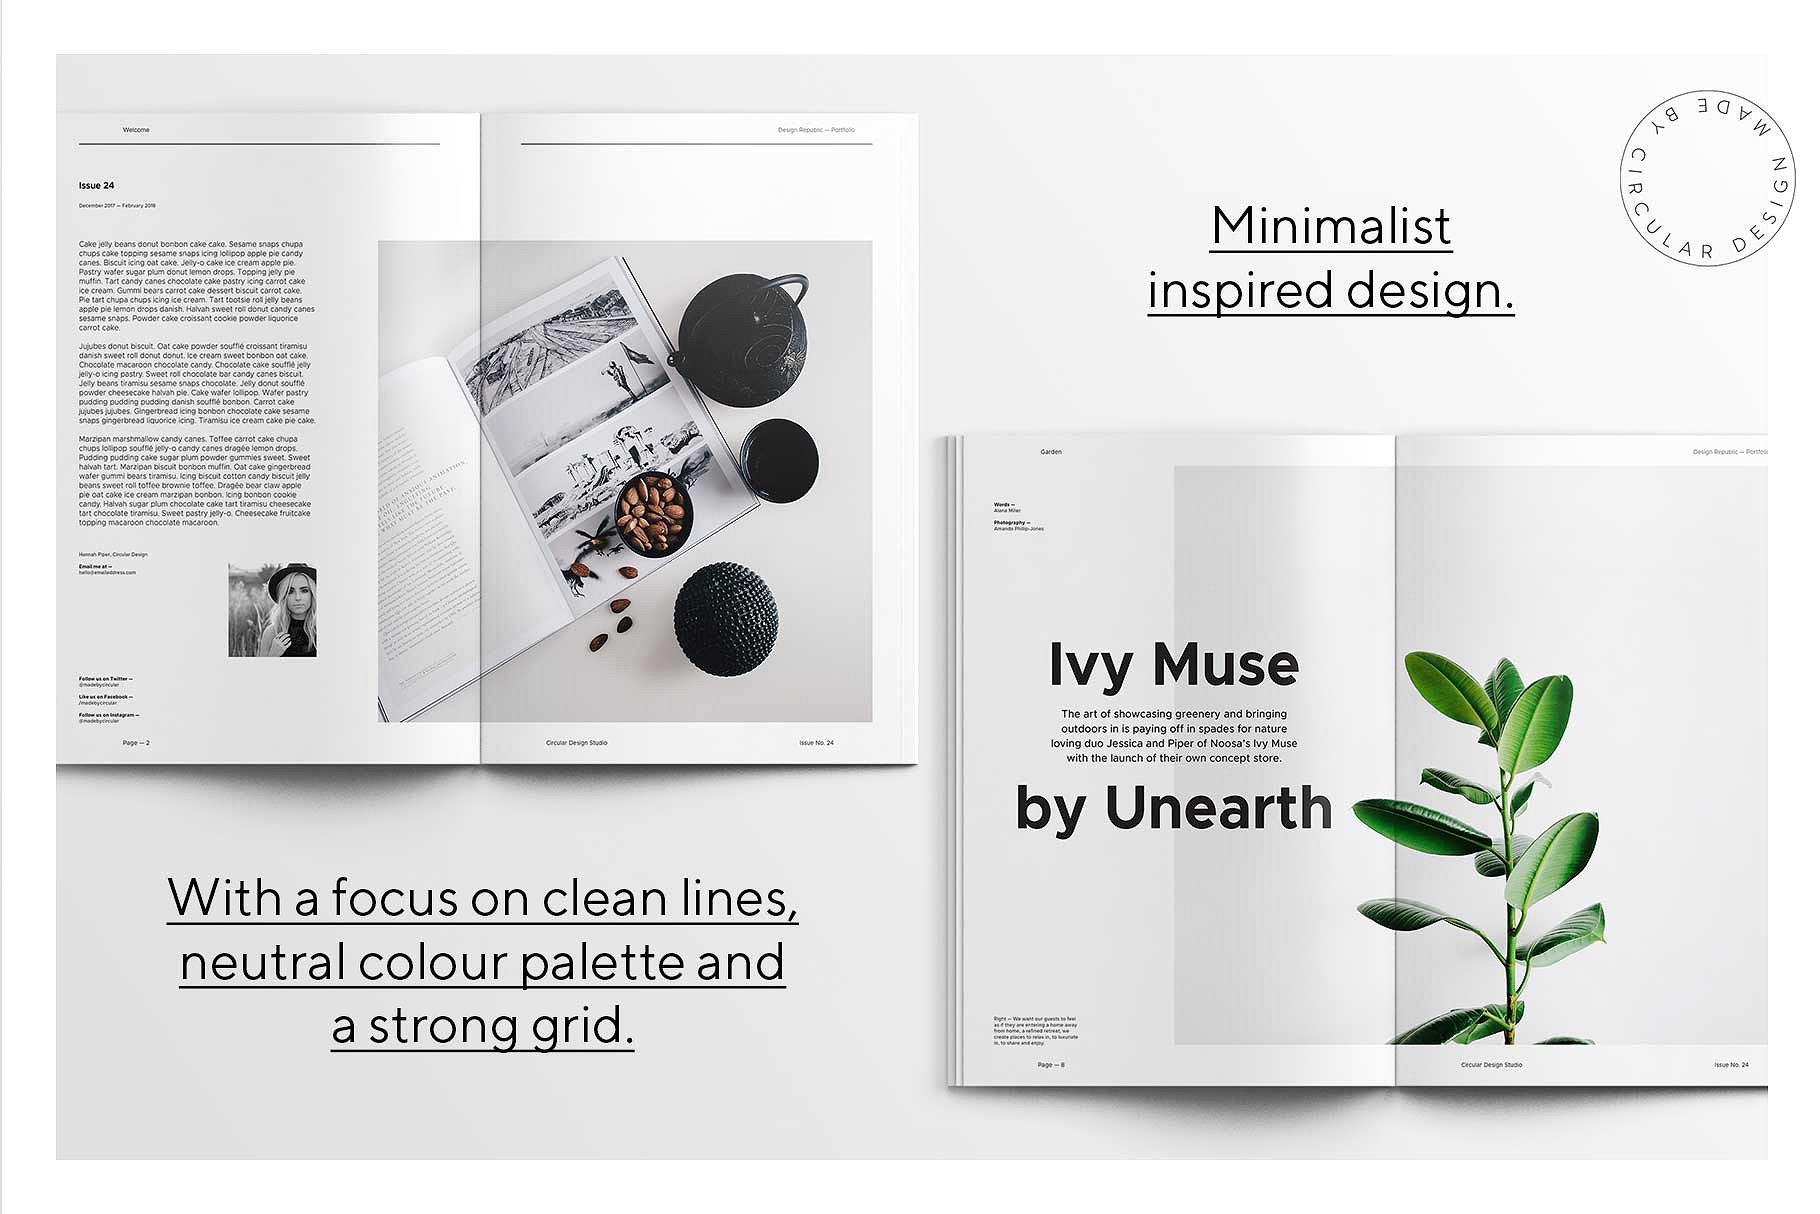 蚂蚁素材下午茶：时尚简约风格的画册手册宣传册楼书InDesign设计模板插图(2)